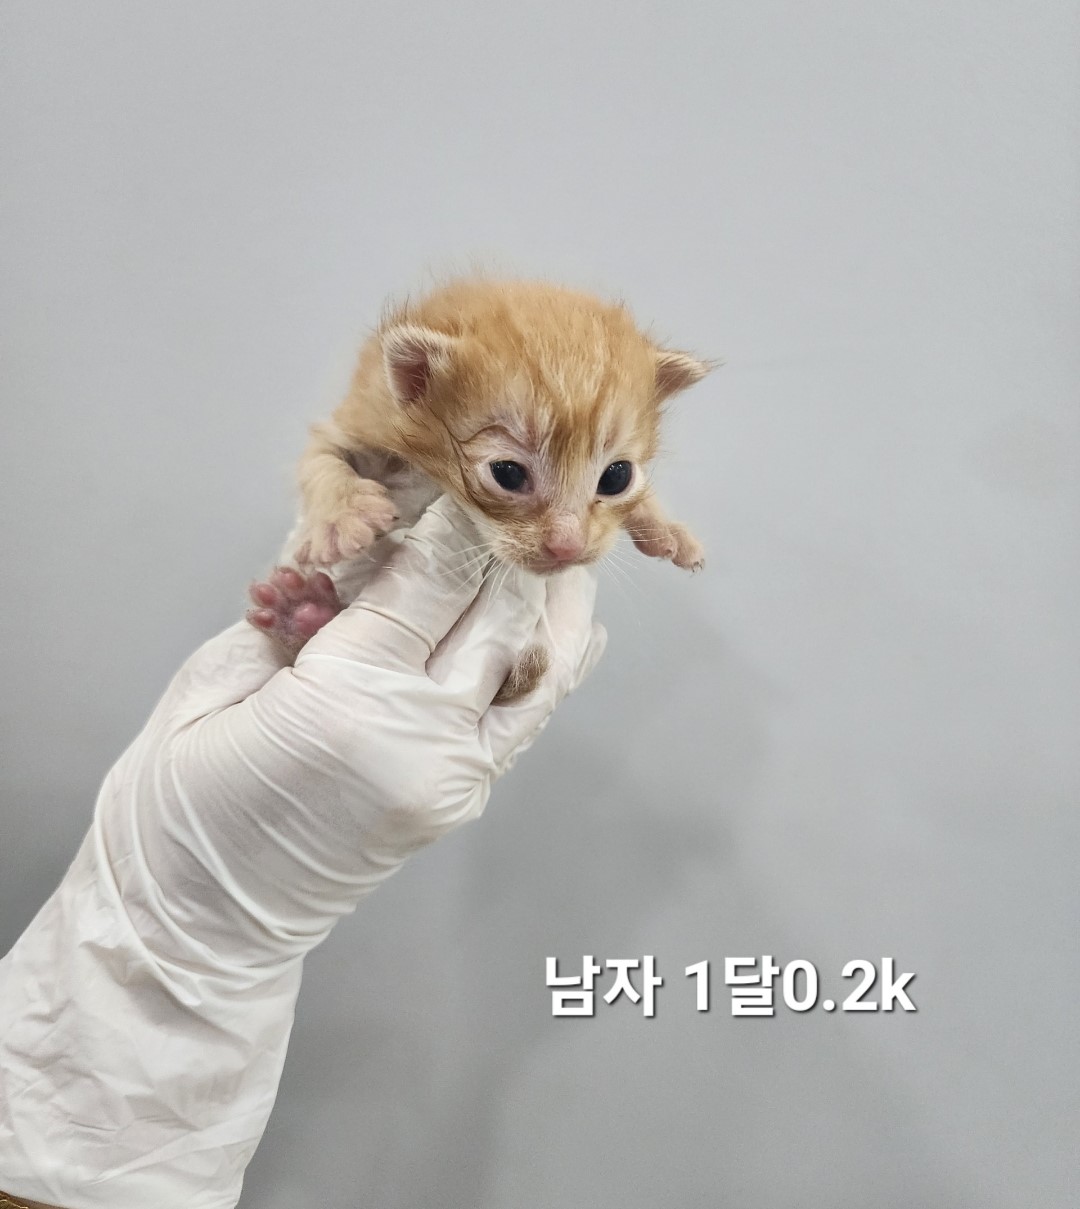 공고 번호가 충북-옥천-2024-00237인 한국 고양이 동물 사진